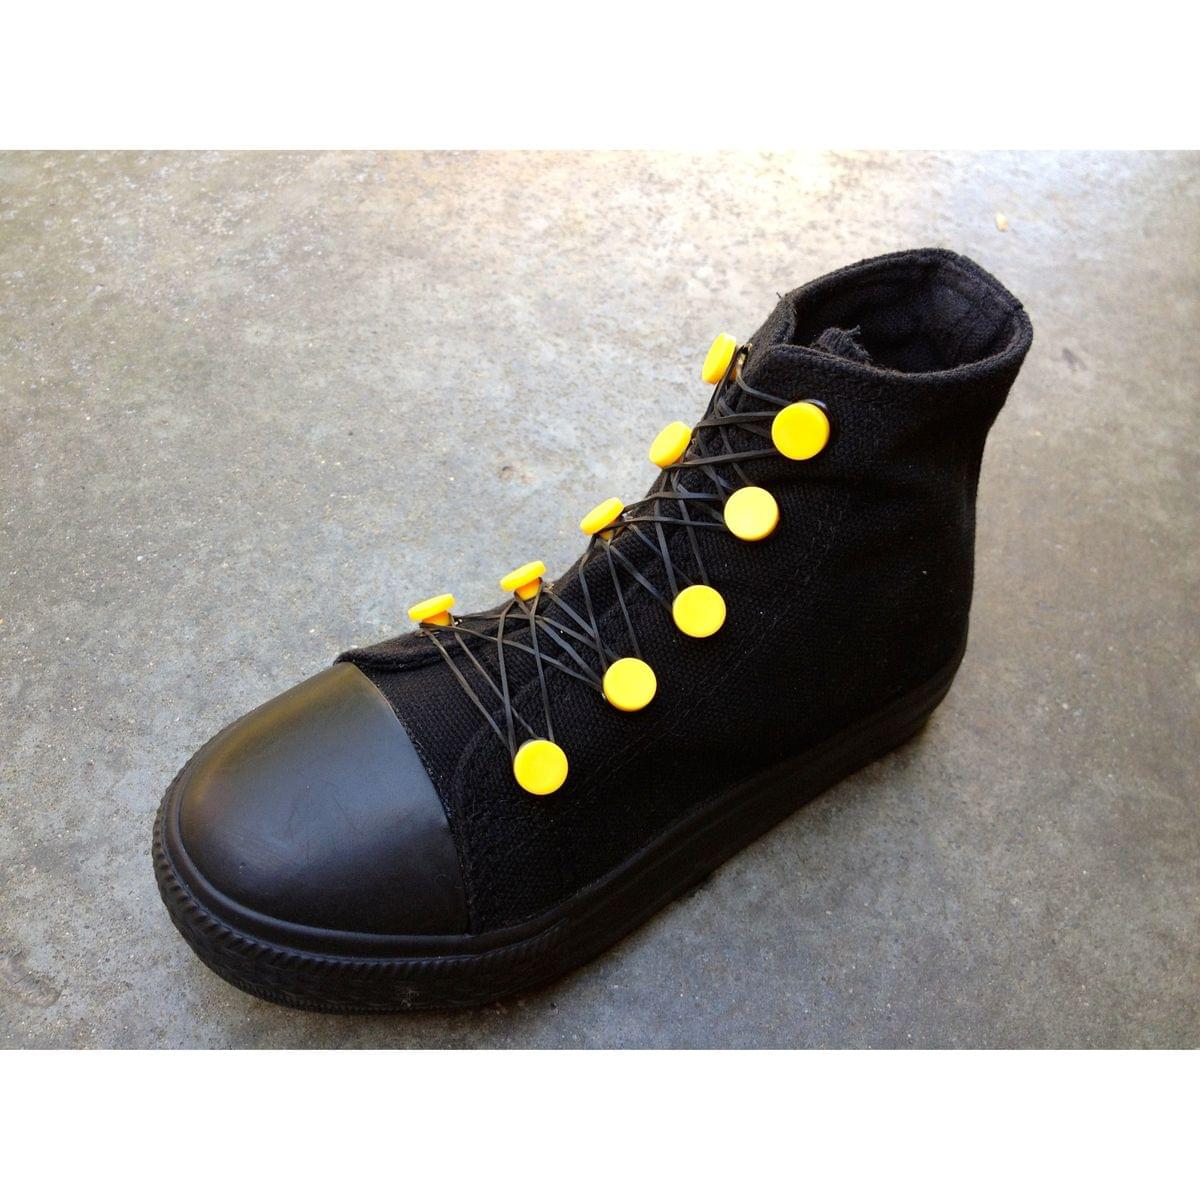 Shwings Linx Yellow Post Footwear Accessory